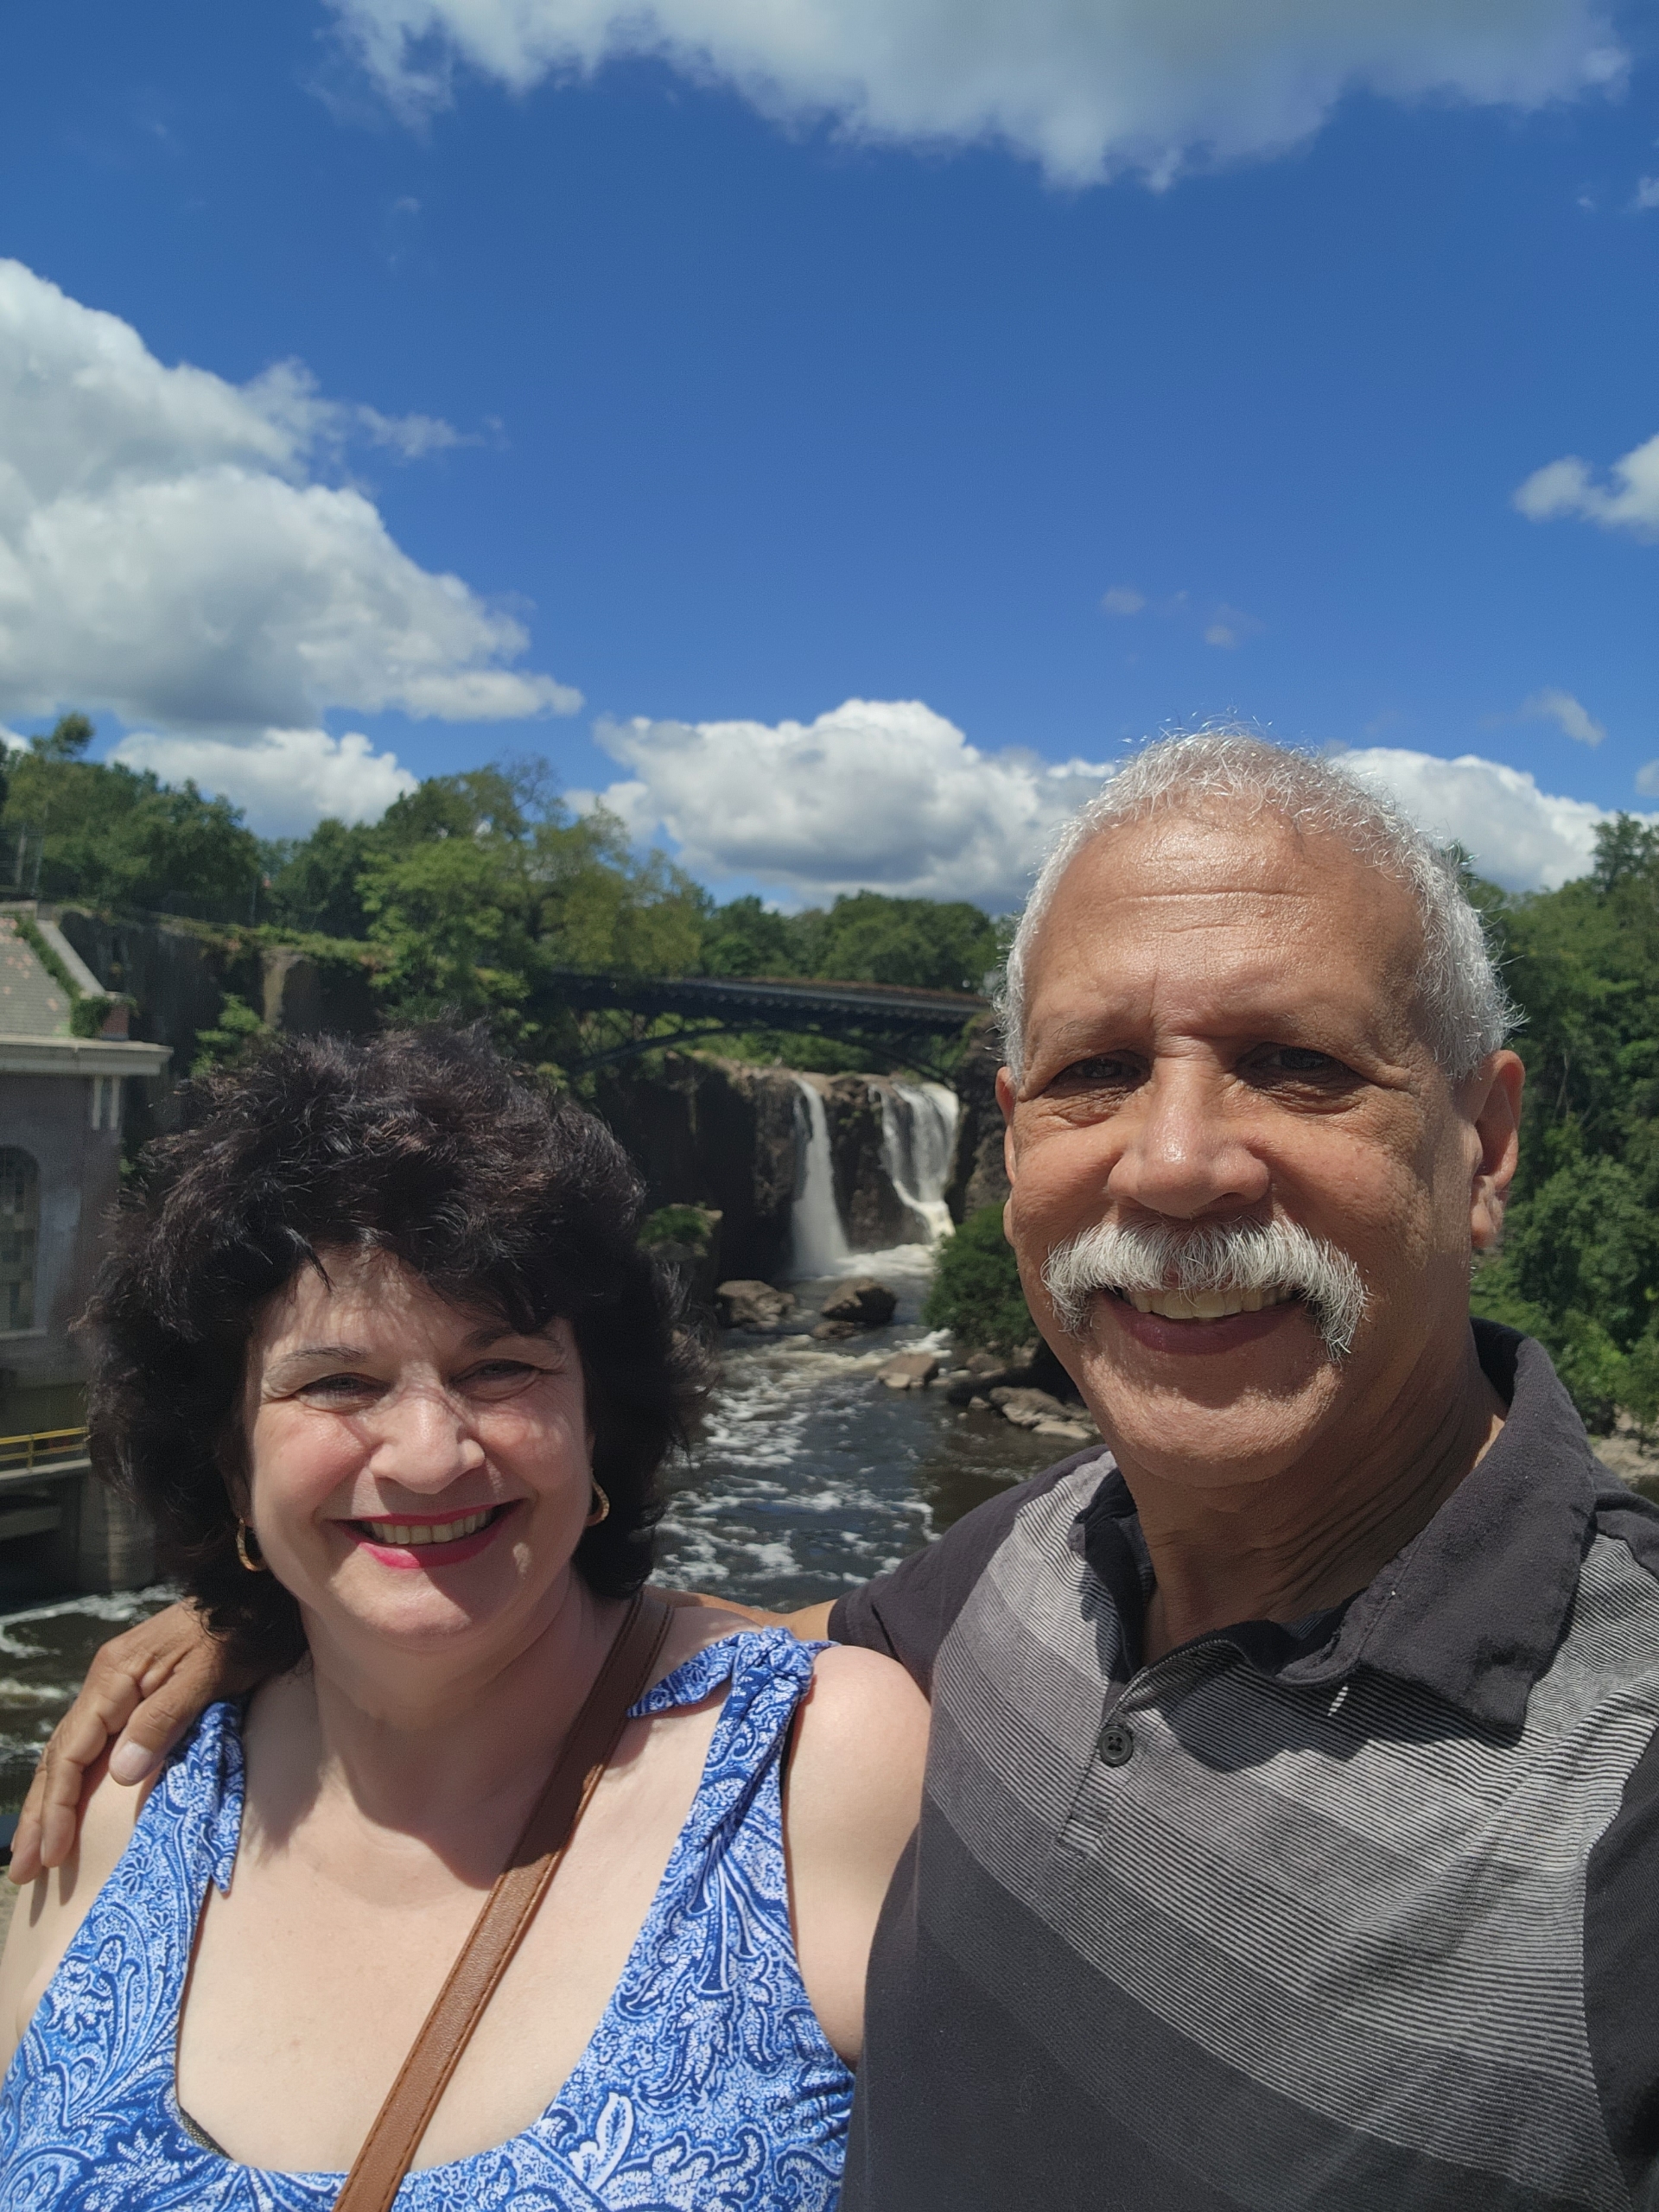 At the Great Falls